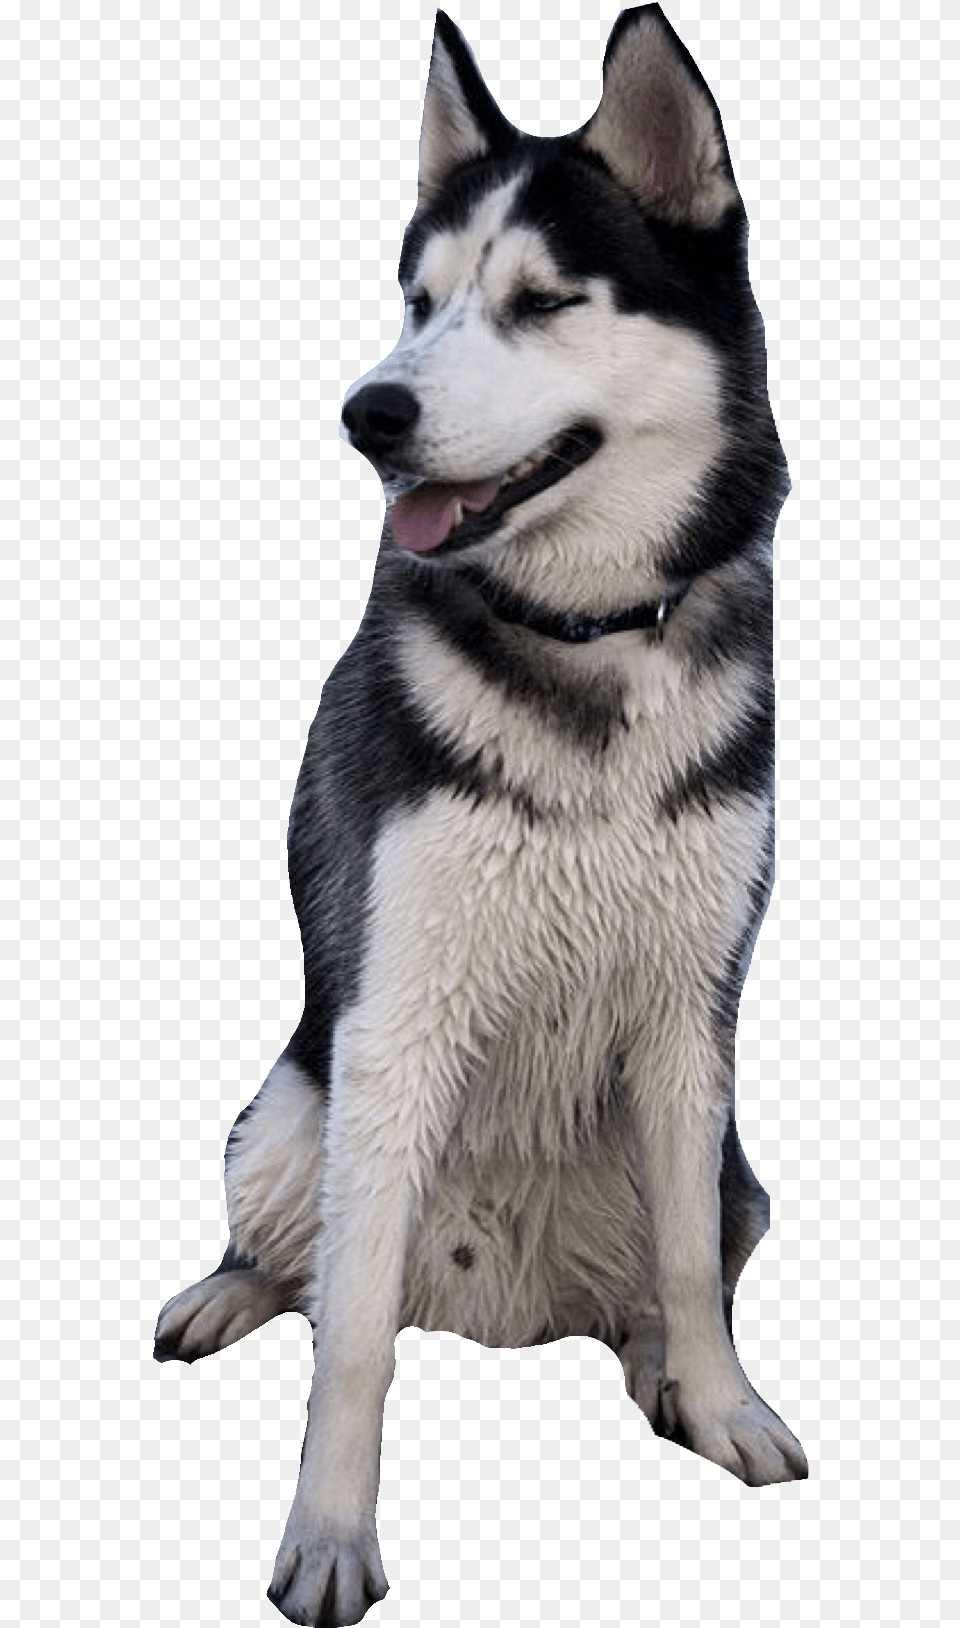 White Dog Siberian Husky Background, Animal, Canine, Mammal, Pet Png Image